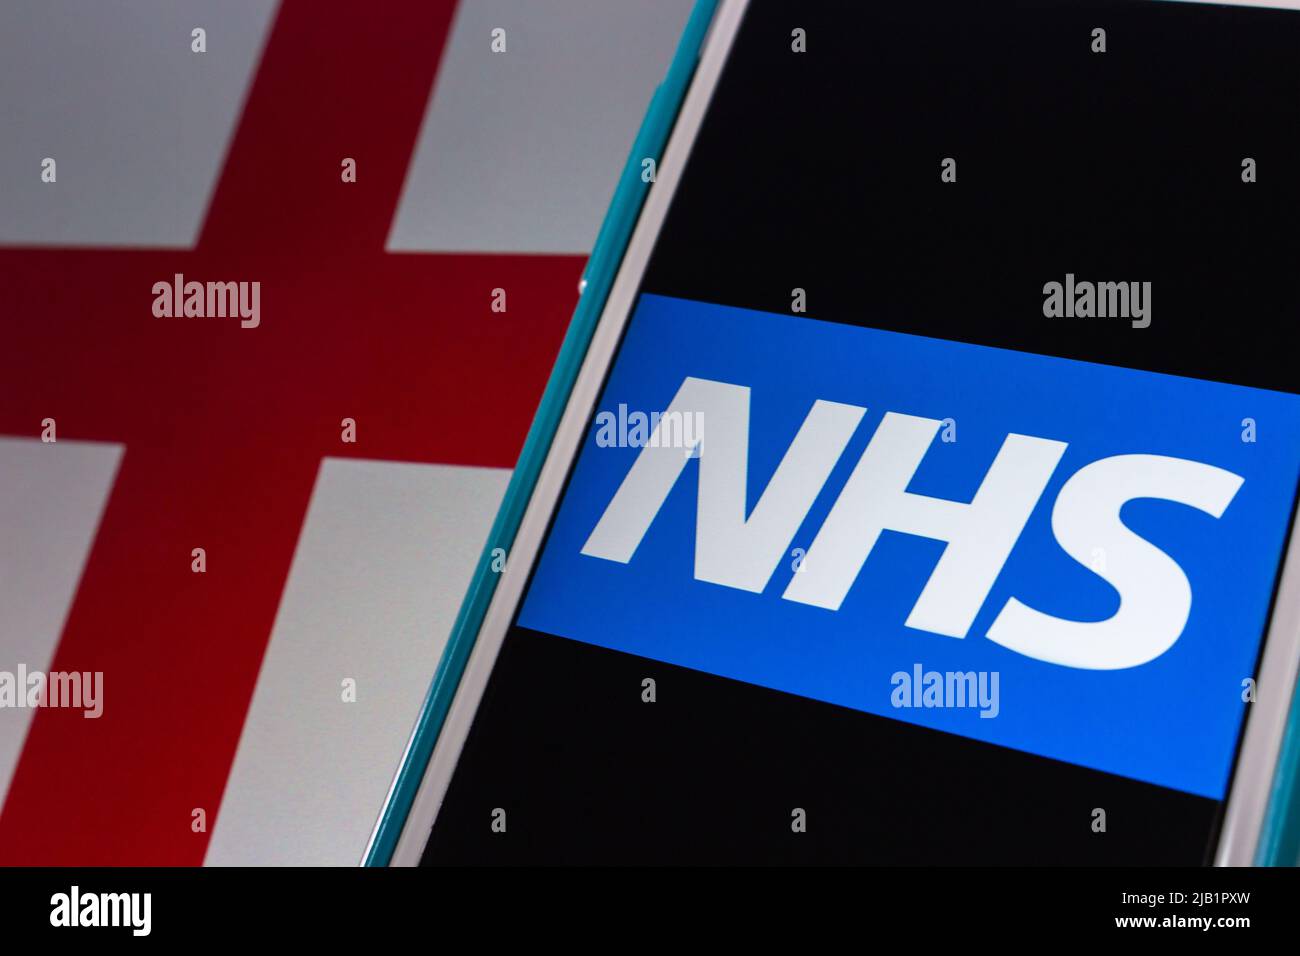 Kumamoto, JAPÓN - Sep 6 2021 : logo del NHS (Servicio Nacional de Salud) en el iPhone en la bandera de Inglaterra. Hay 3 sistemas que utilizan el mismo nombre NHS Foto de stock